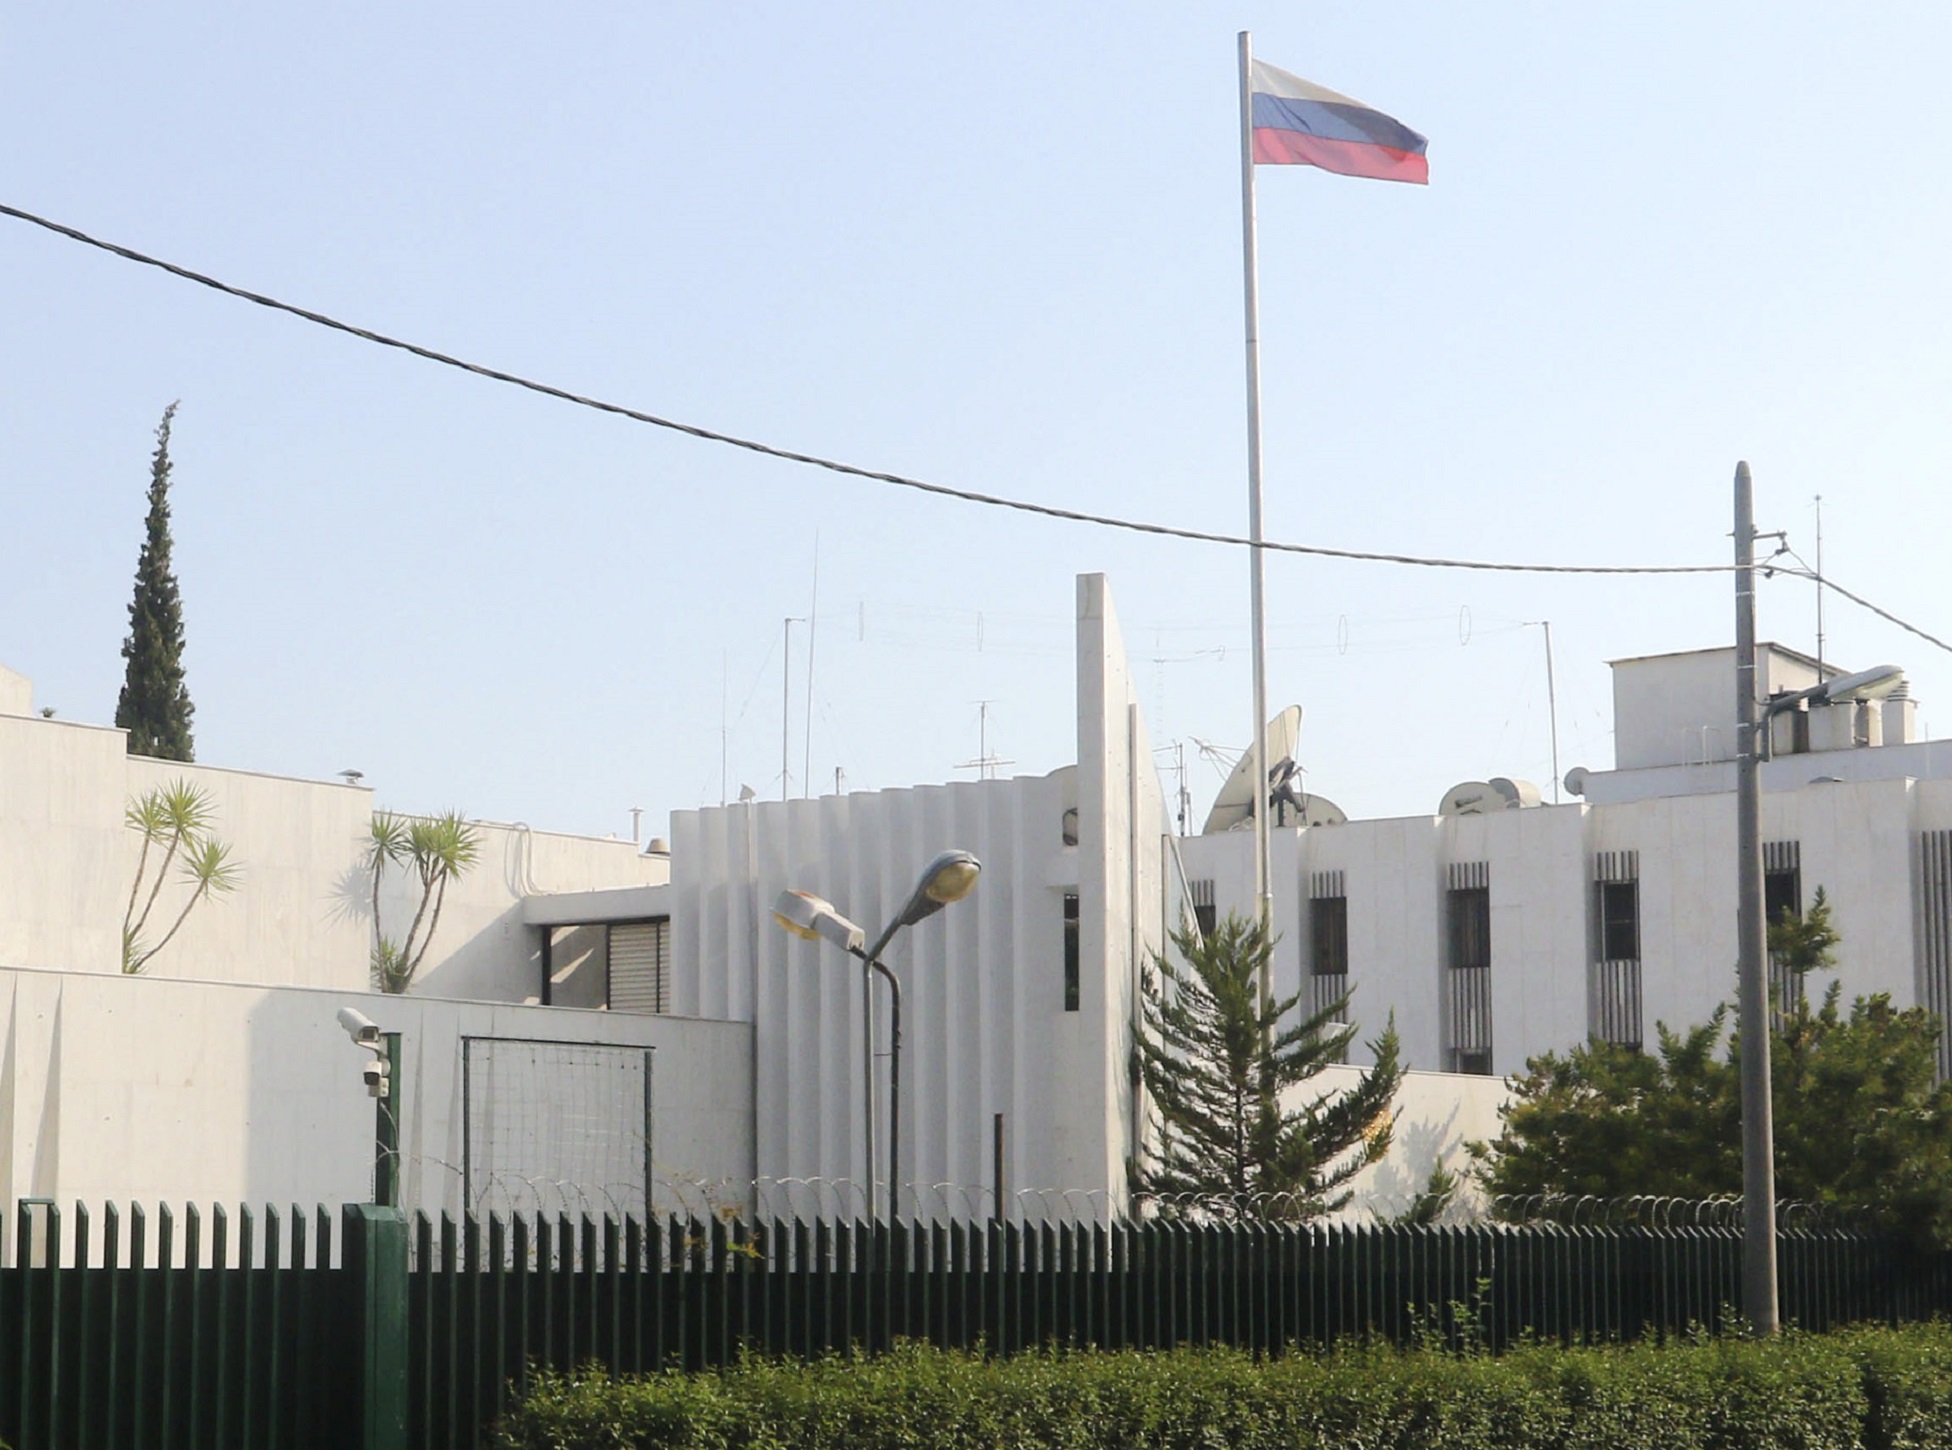 Ρωσική πρεσβεία: «Κίνδυνος για την ασφάλεια των Ρώσων πολιτών στην Ελλάδα»